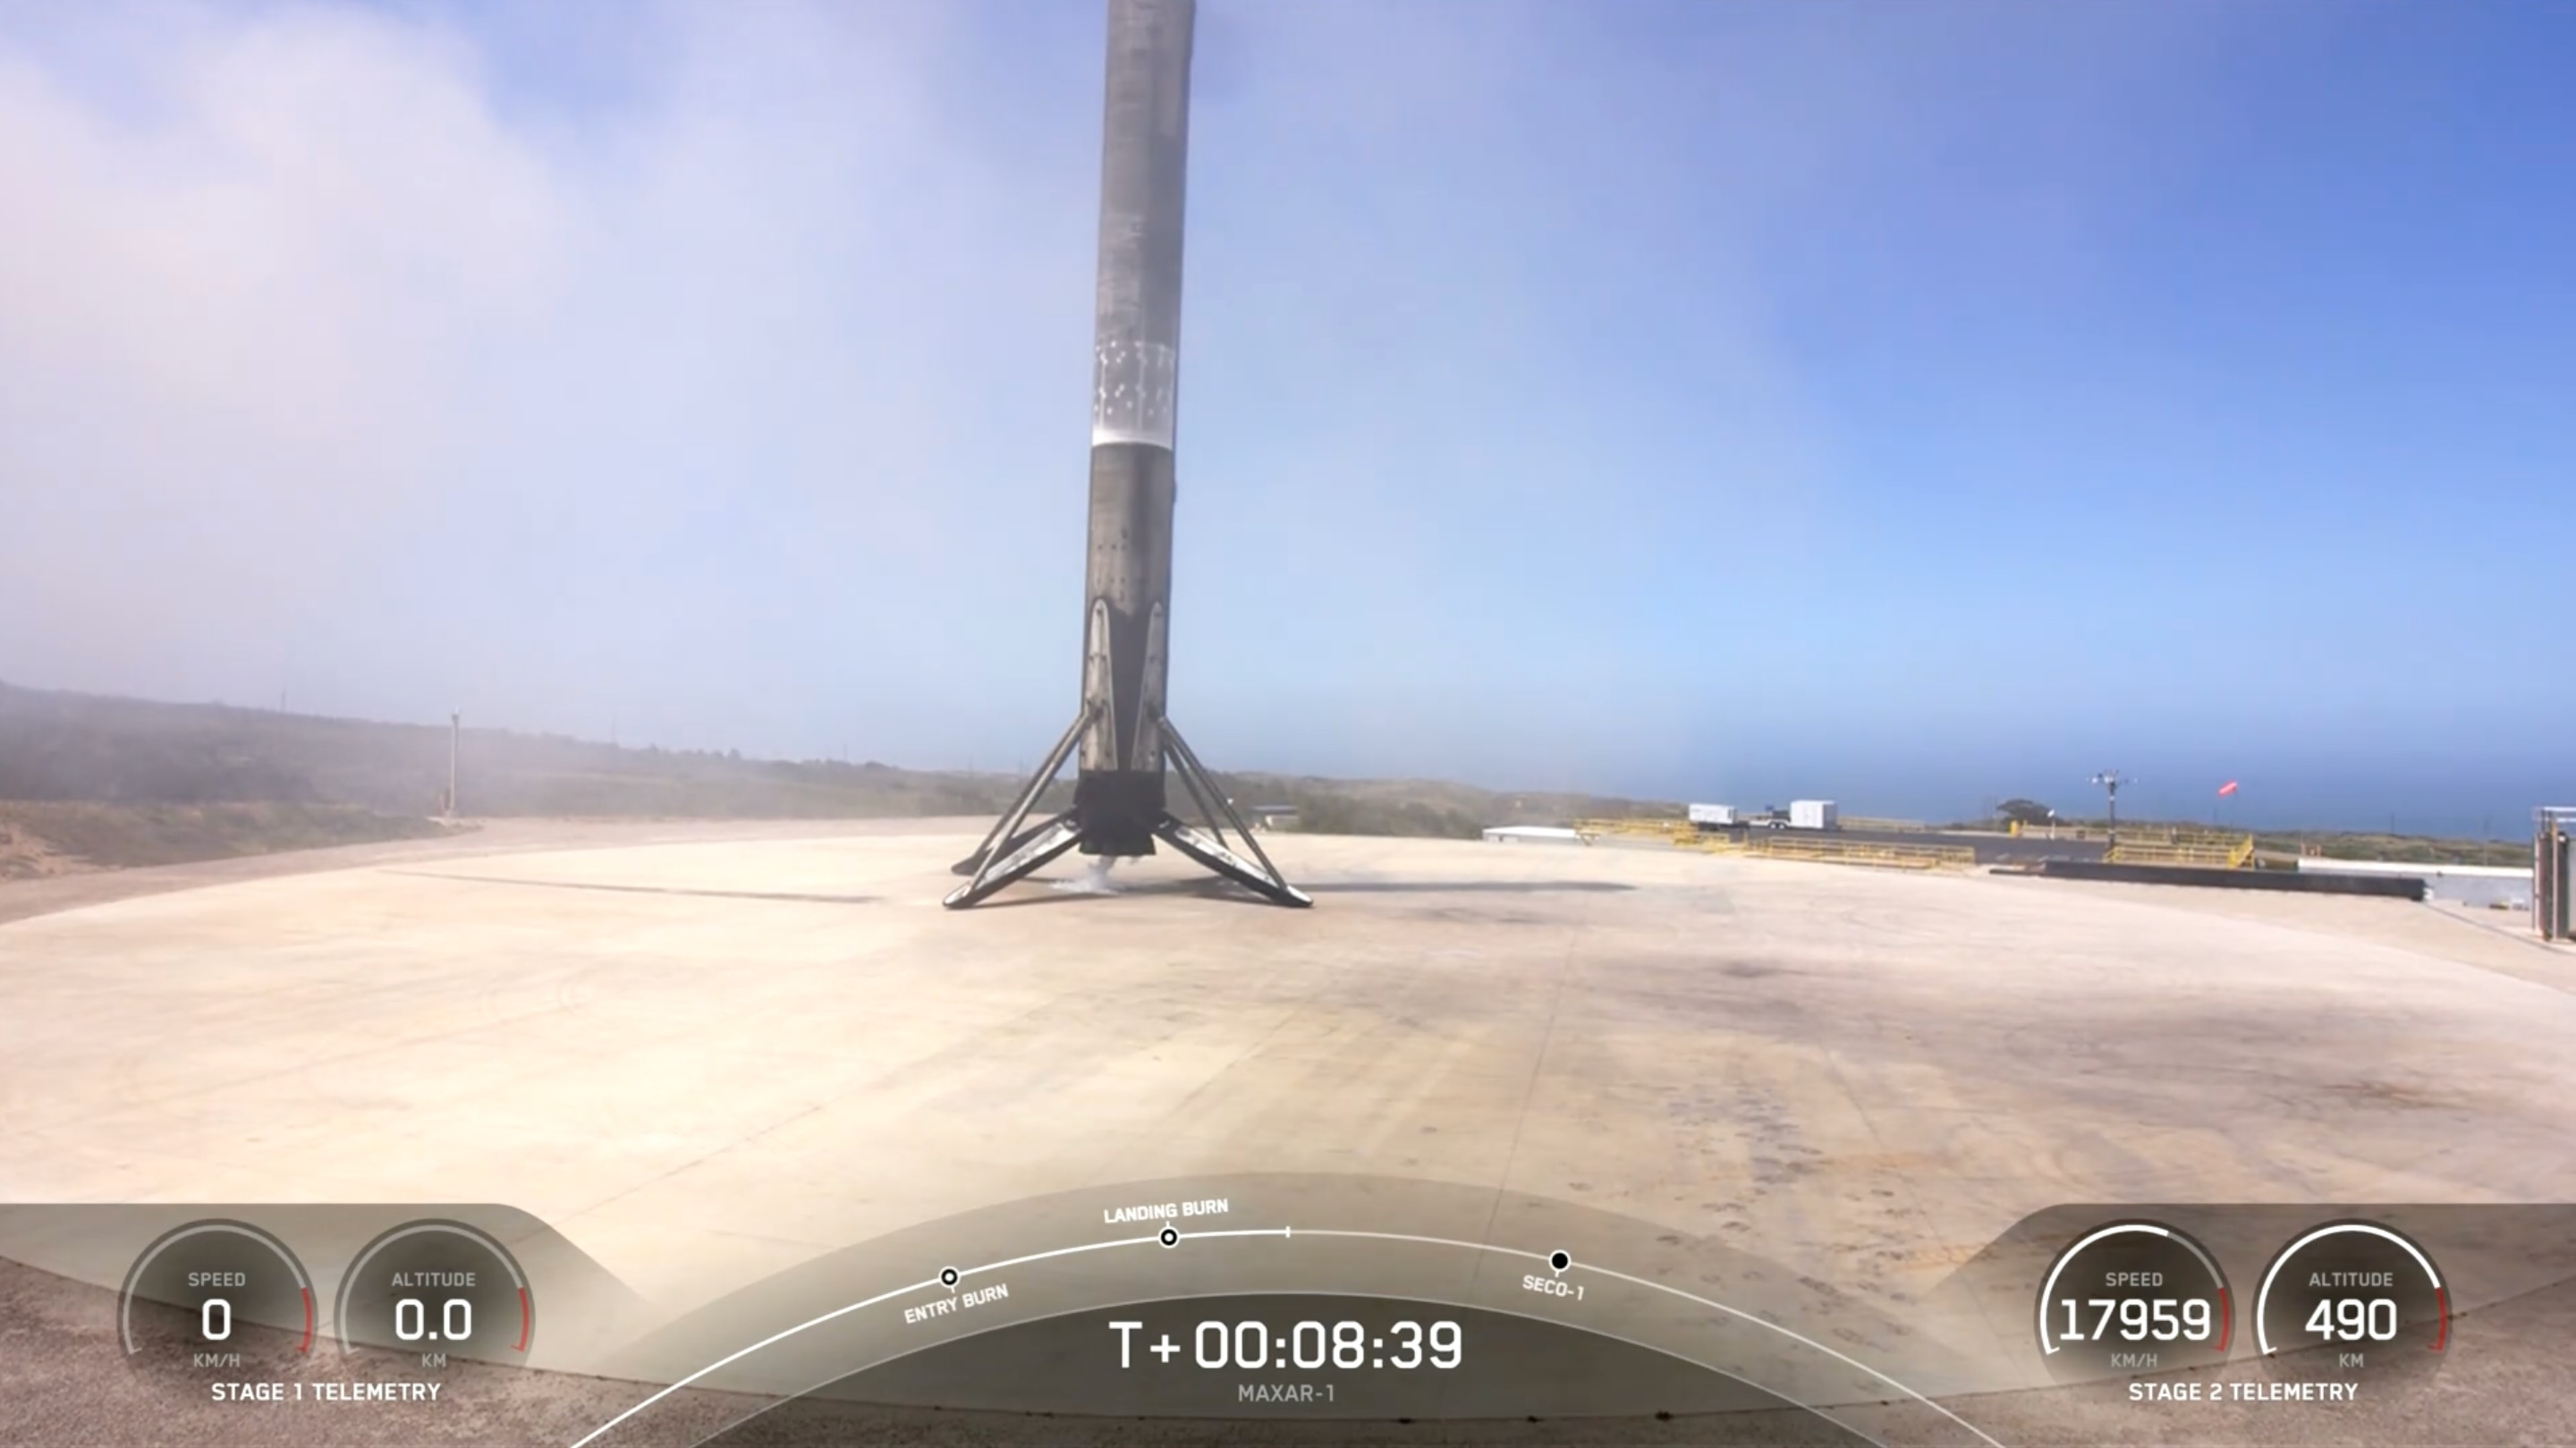 Il primo stadio di un razzo SpaceX Falcon 9 in bianco e nero viene posizionato sulla piattaforma di atterraggio poco dopo l'atterraggio.